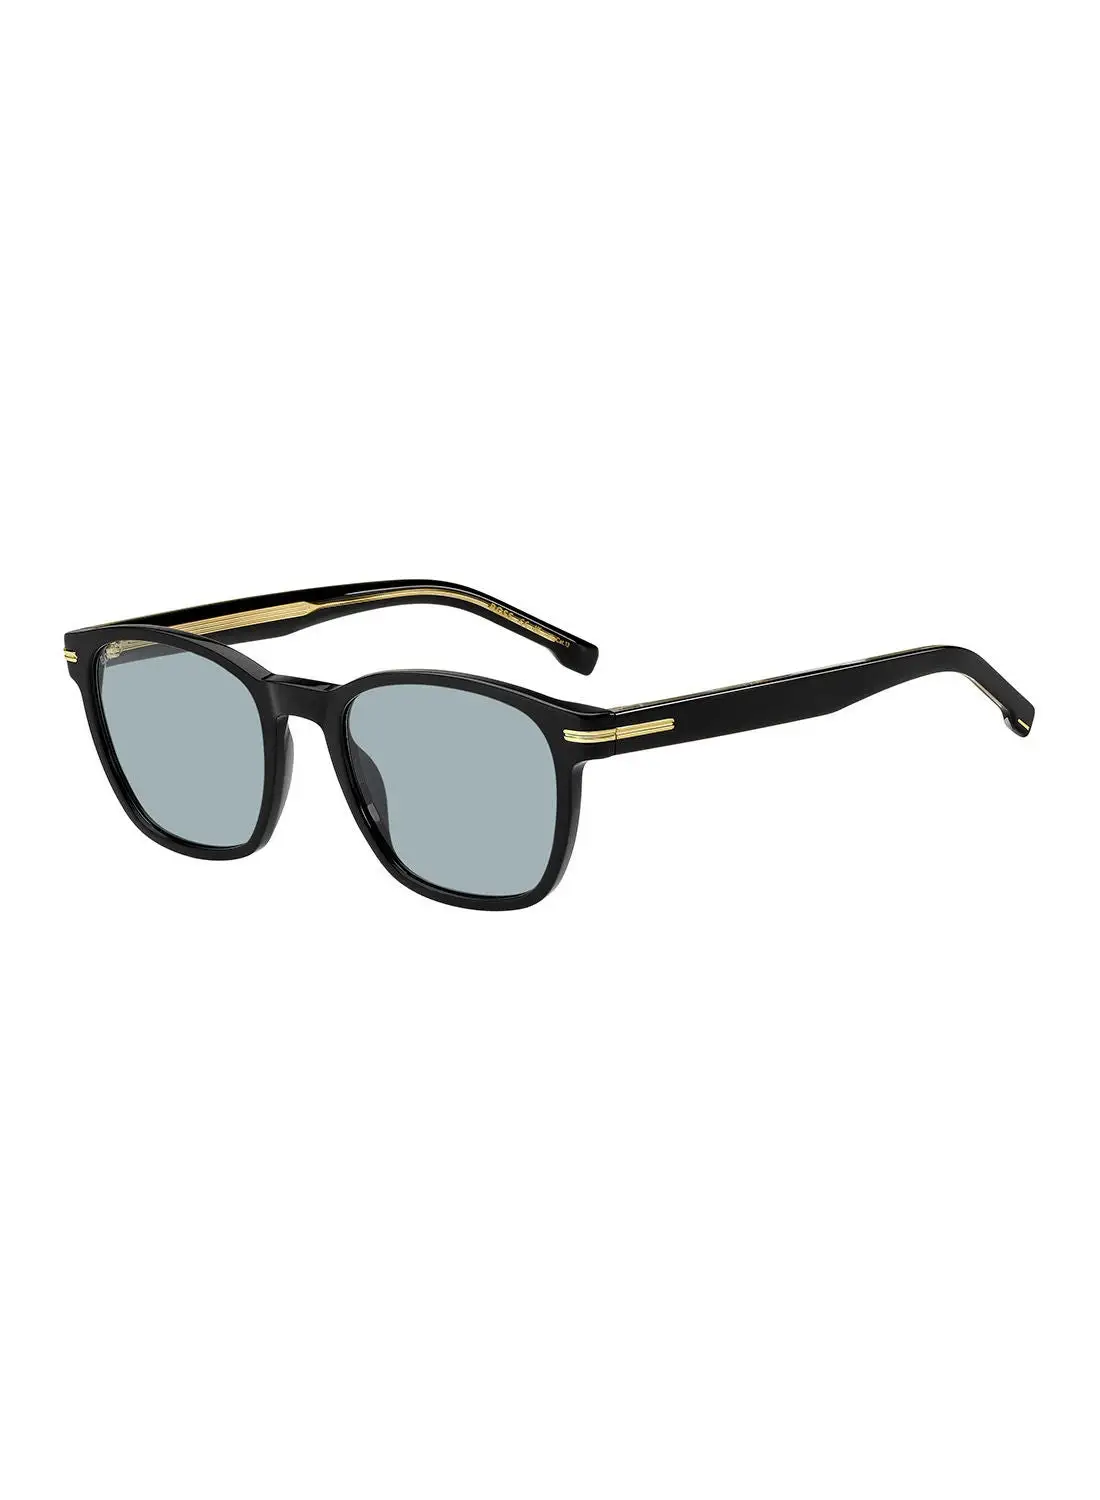 HUGO BOSS Men's UV Protection Square Sunglasses - Boss 1505/S Black 52 - Lens Size: 52 Mm